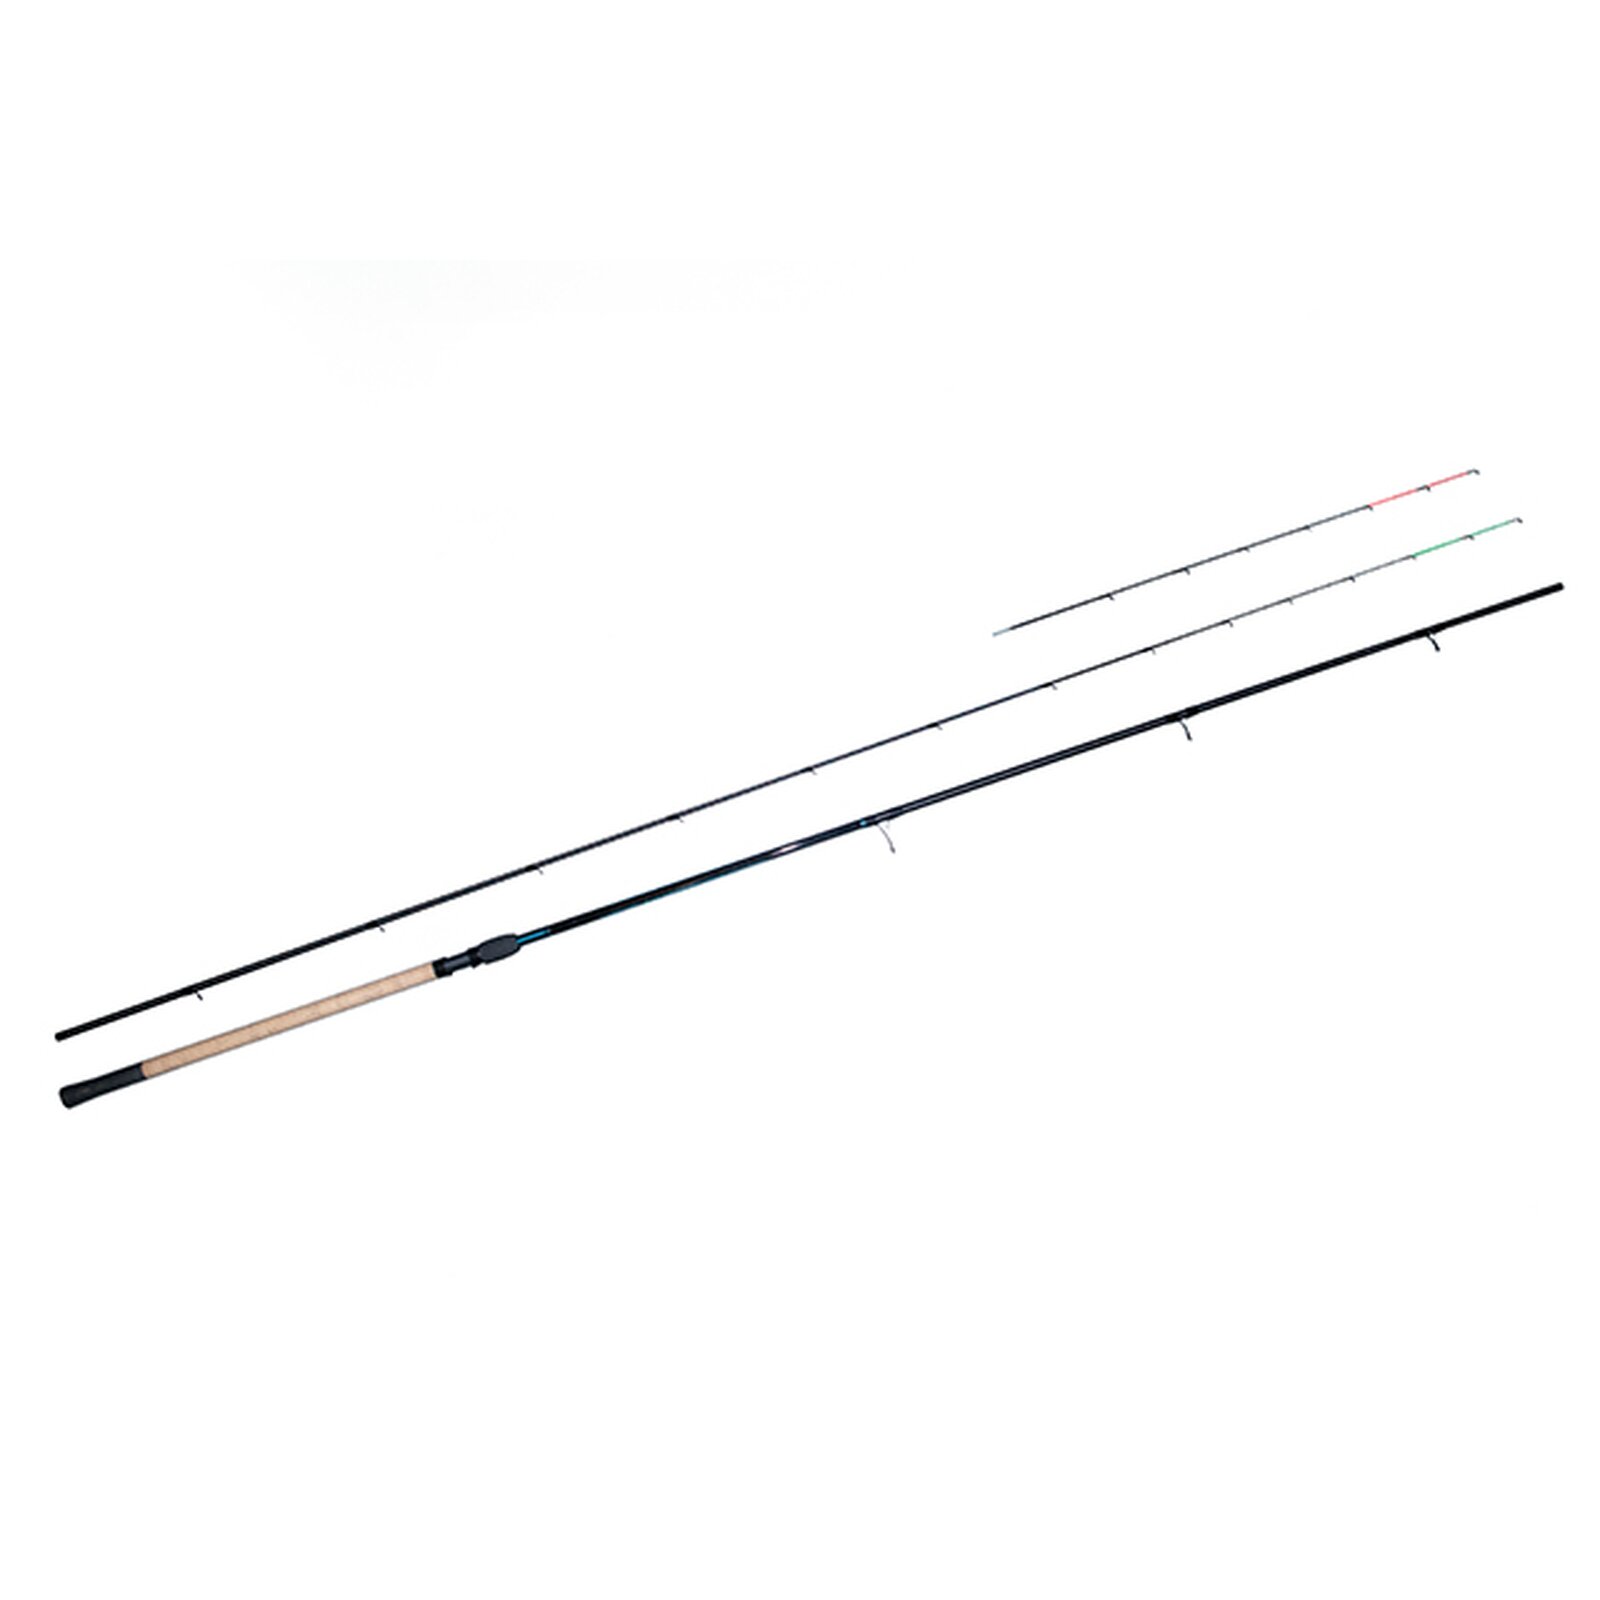 Drennan Vertex 11ft Medium Feeder Rod